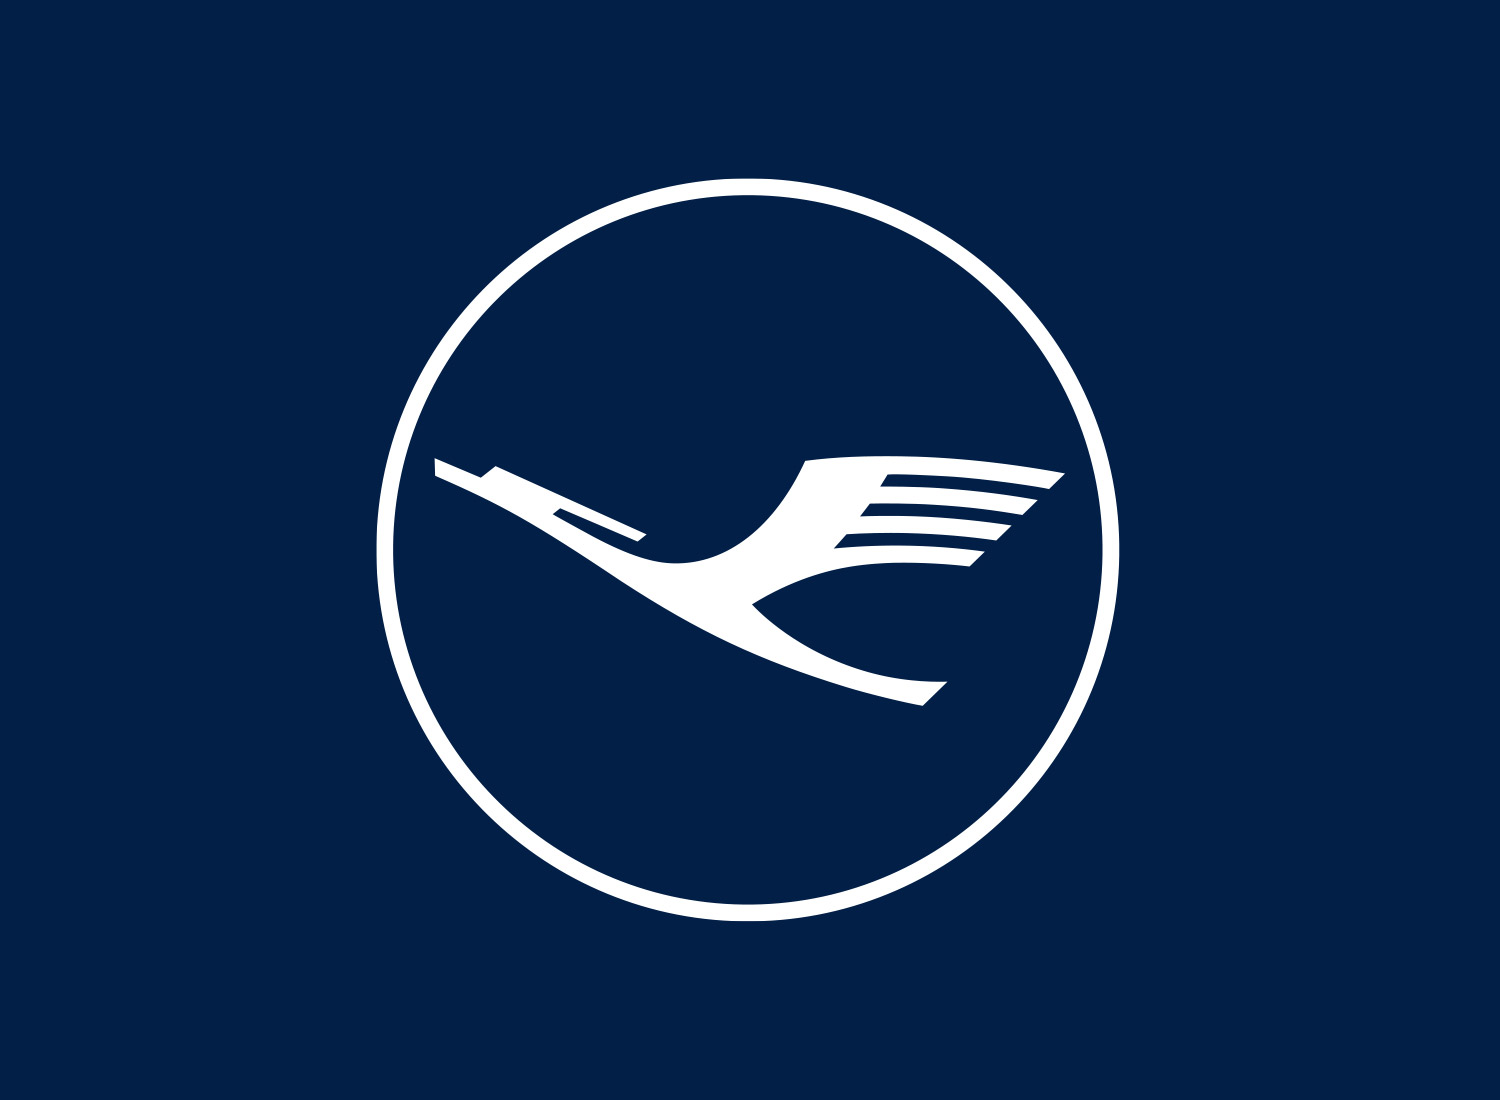 Das neue Erscheinungsbild der Lufthansa – Design Tagebuch